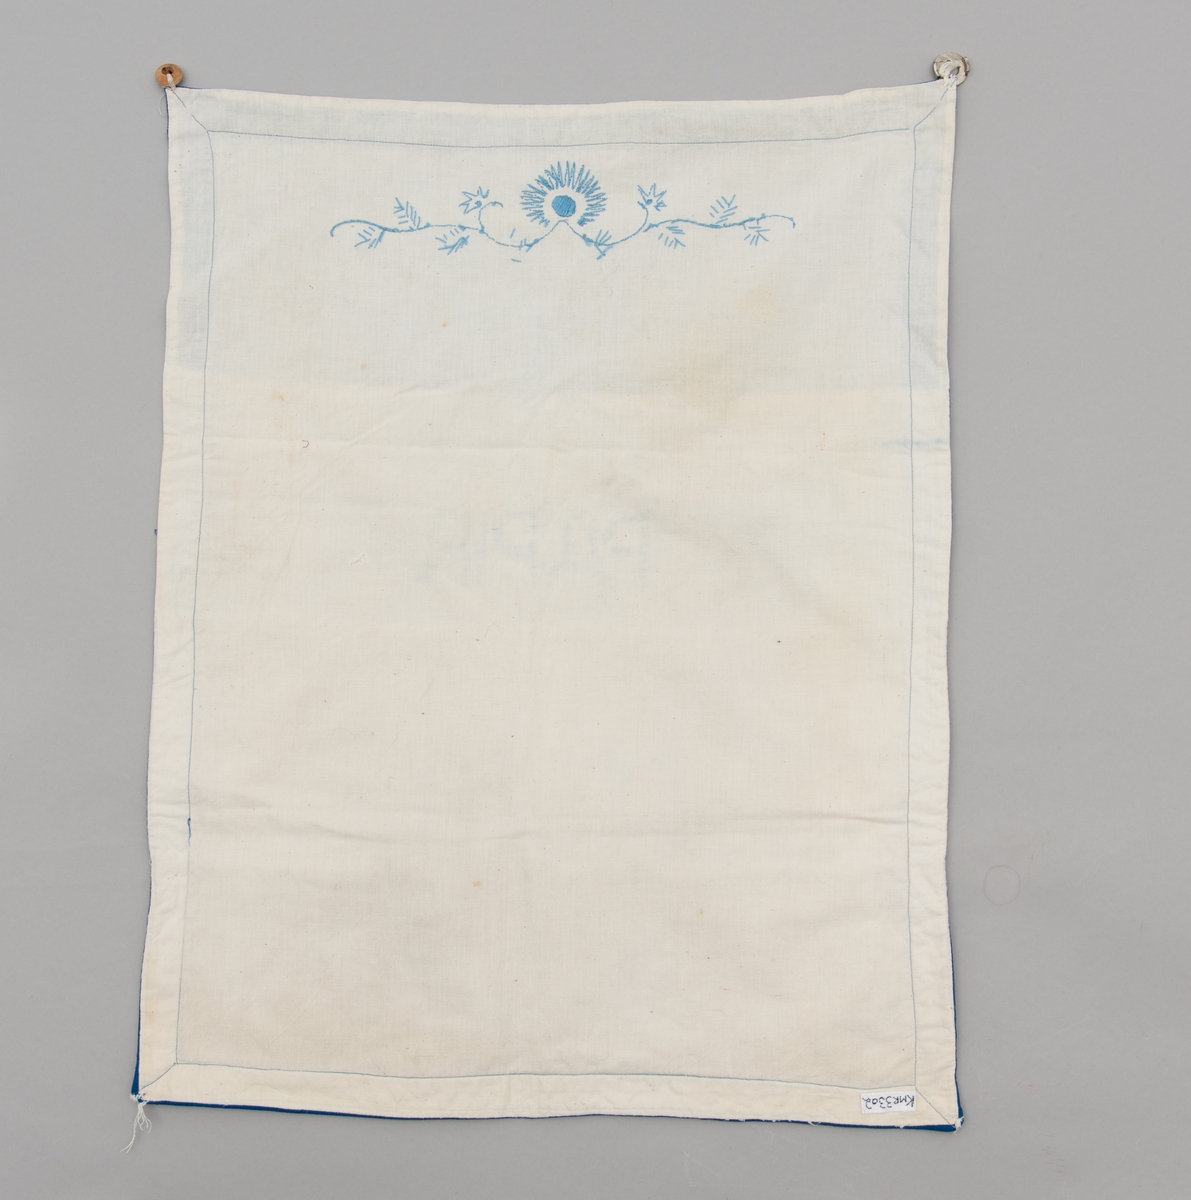 Hvit og blå veggoppbevaring/oppbevaringspose. Den har lommer til papir, poser, kork og hyssing. Blått korssting broderi.